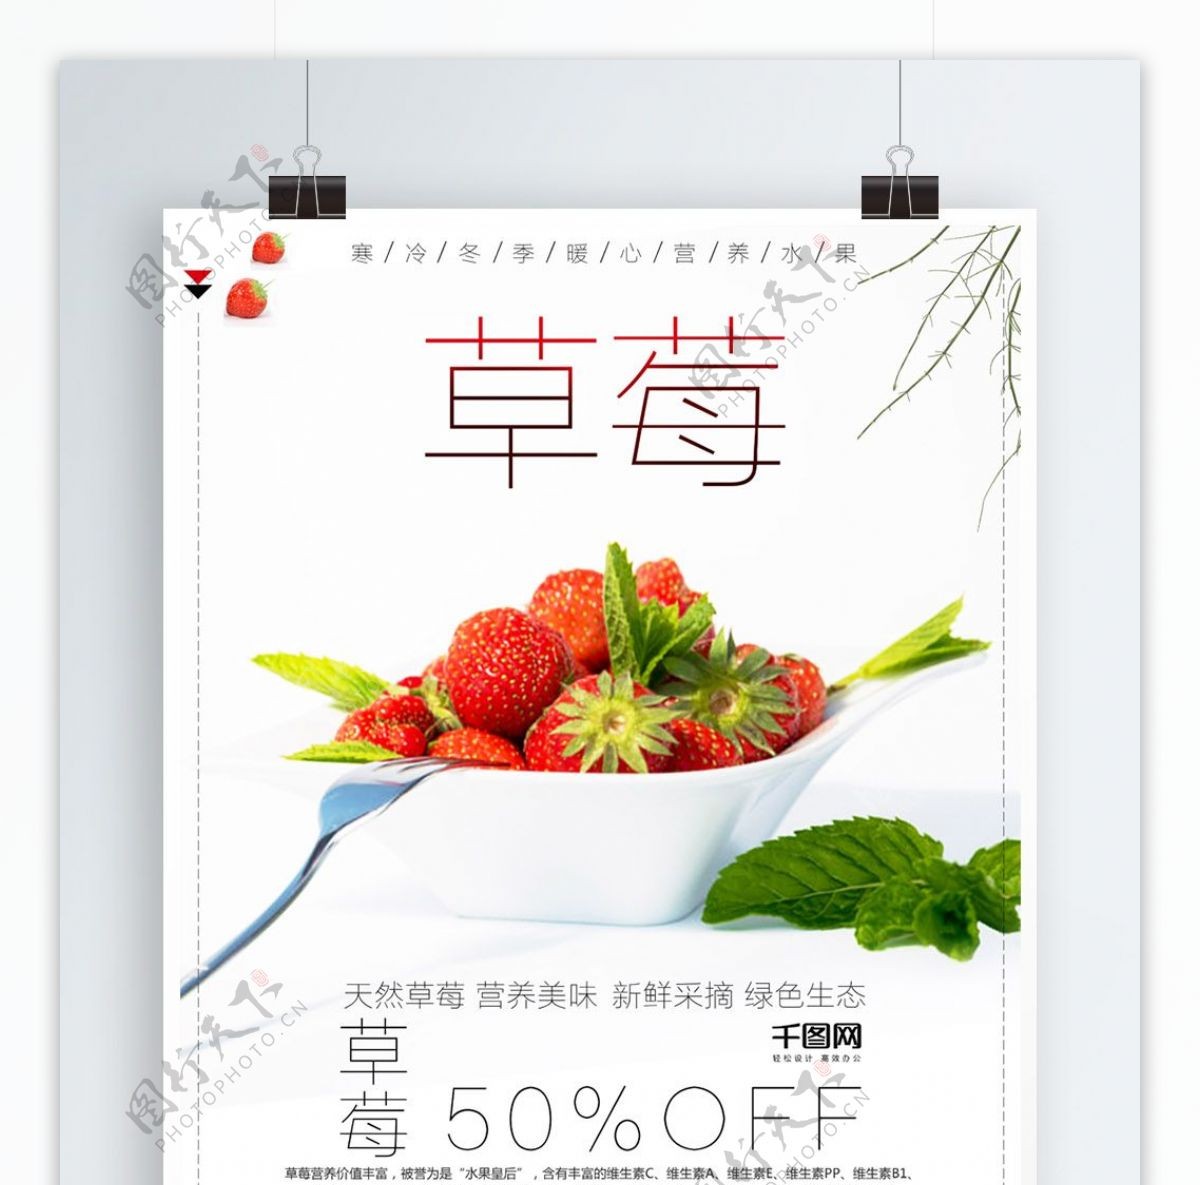 小清新简约水果美食草莓促销海报设计psd